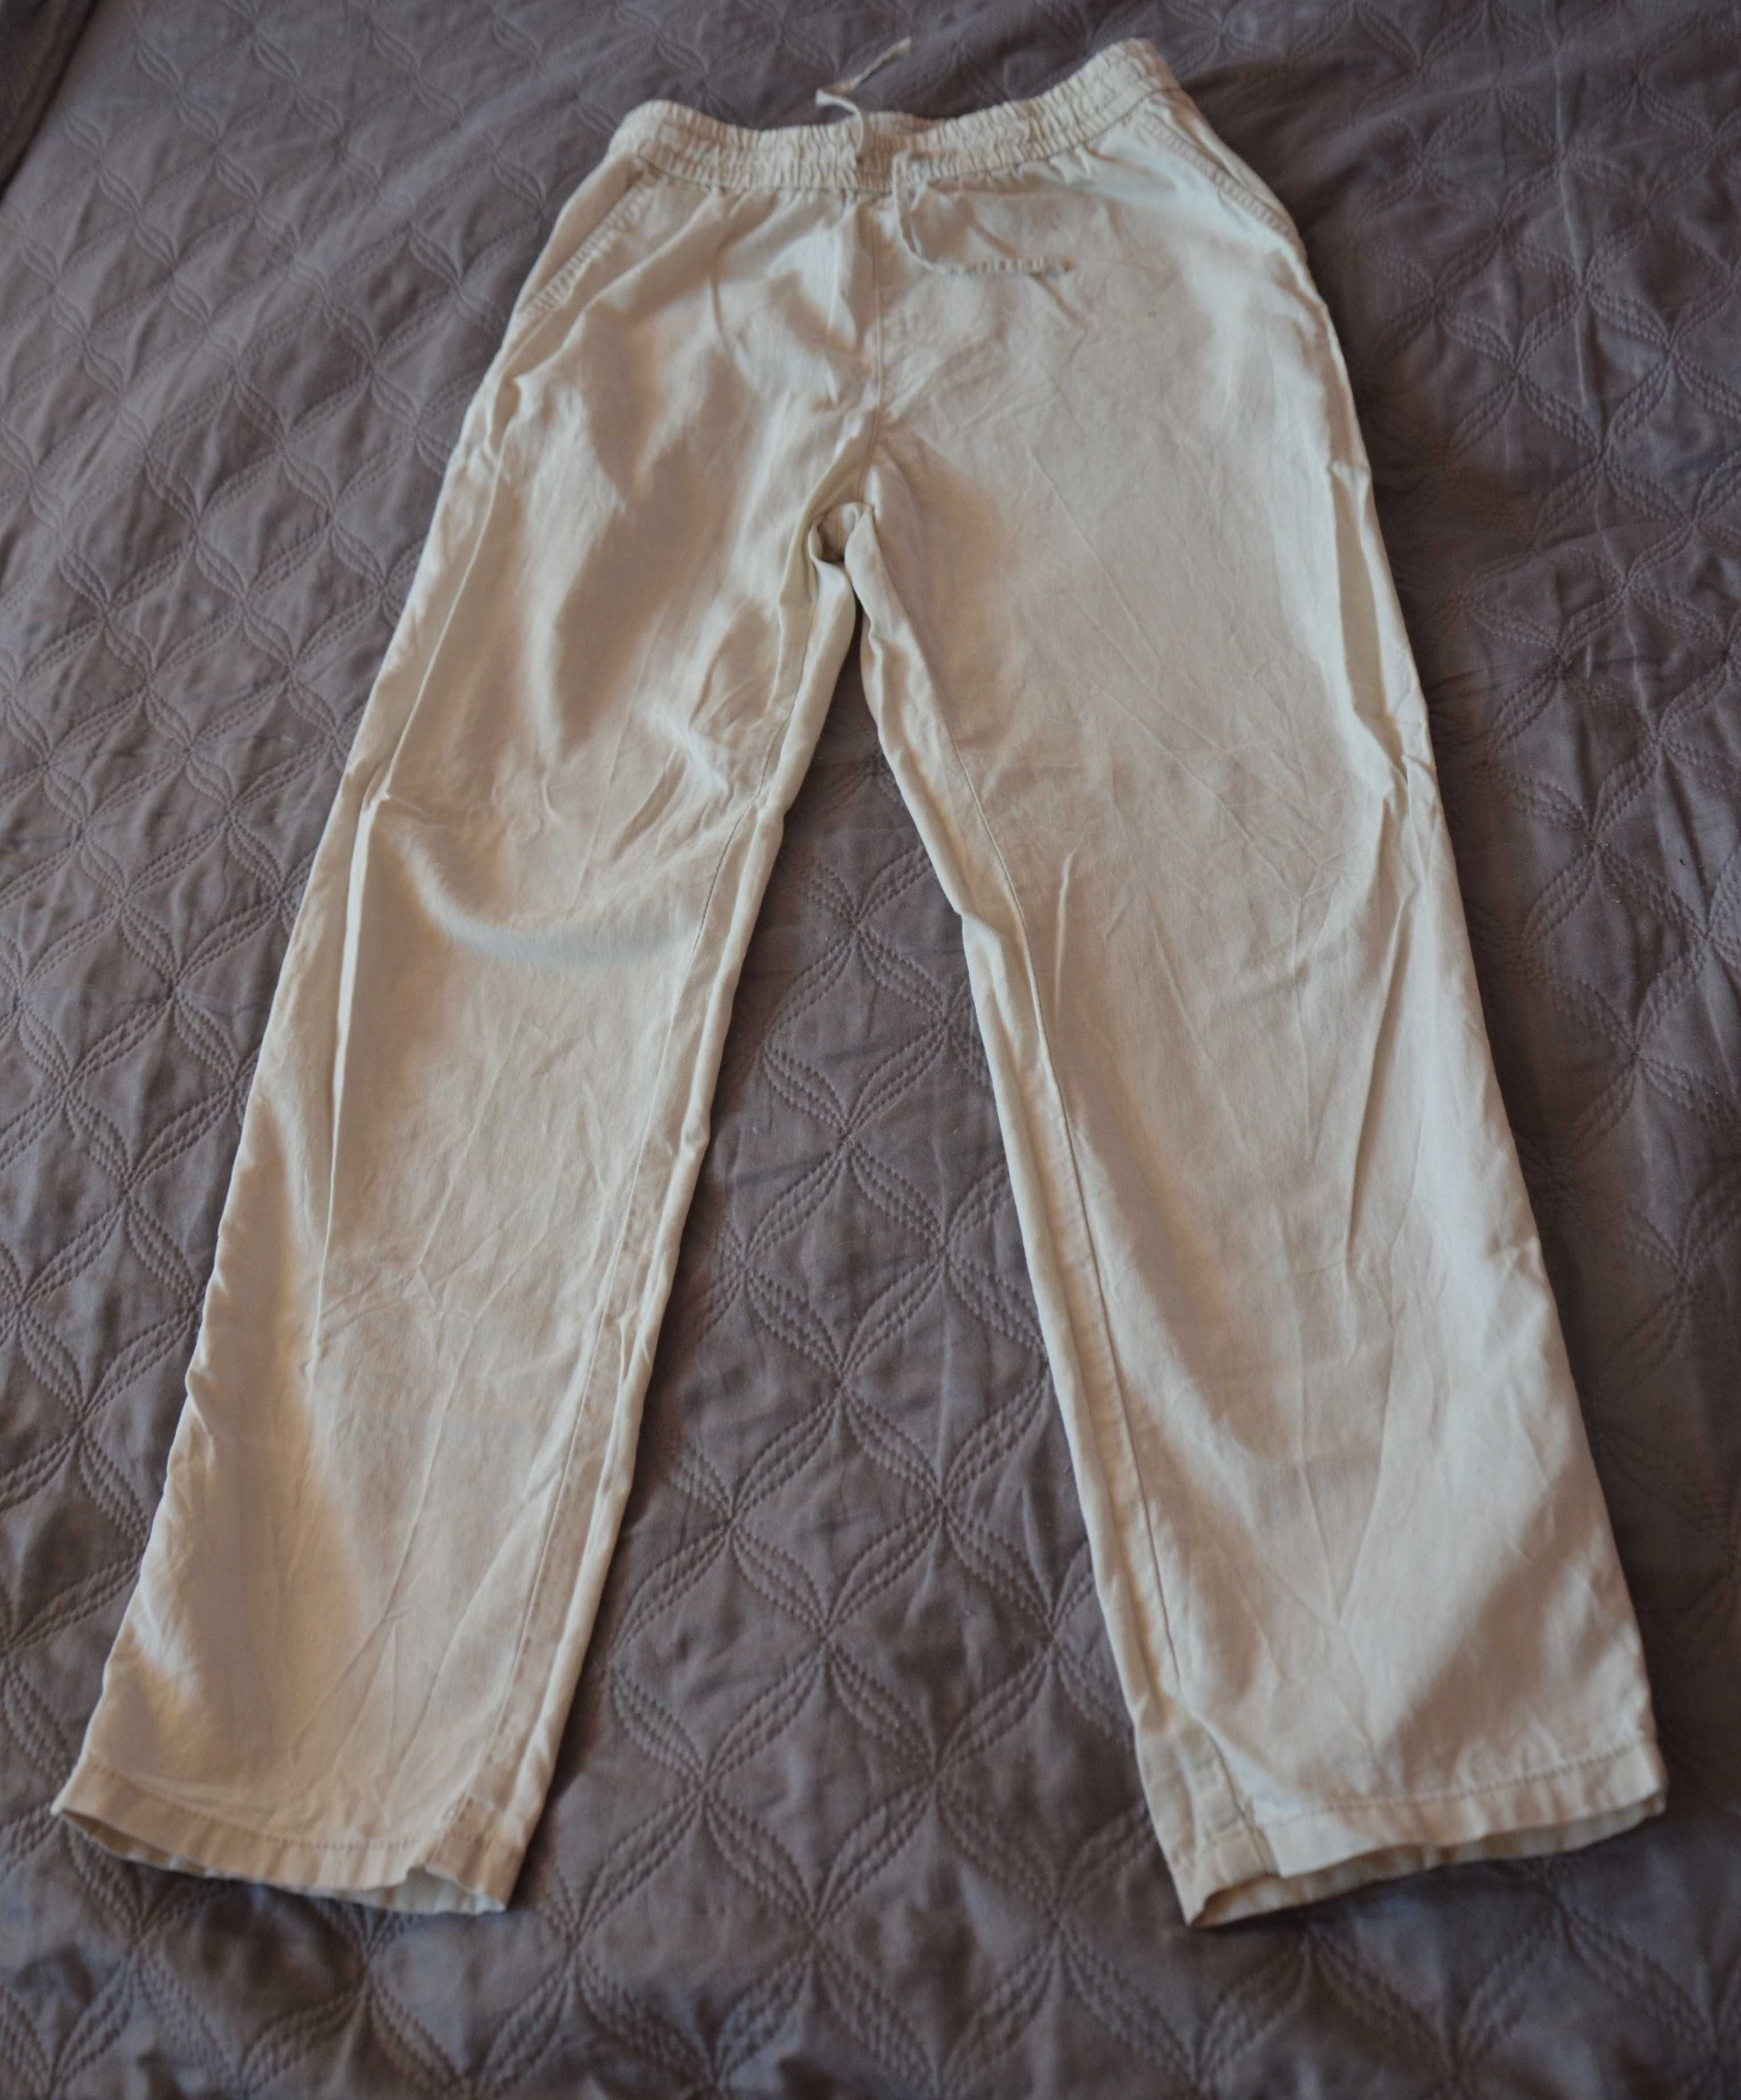 Spodnie dla dziewczynki Kappahl 158cm